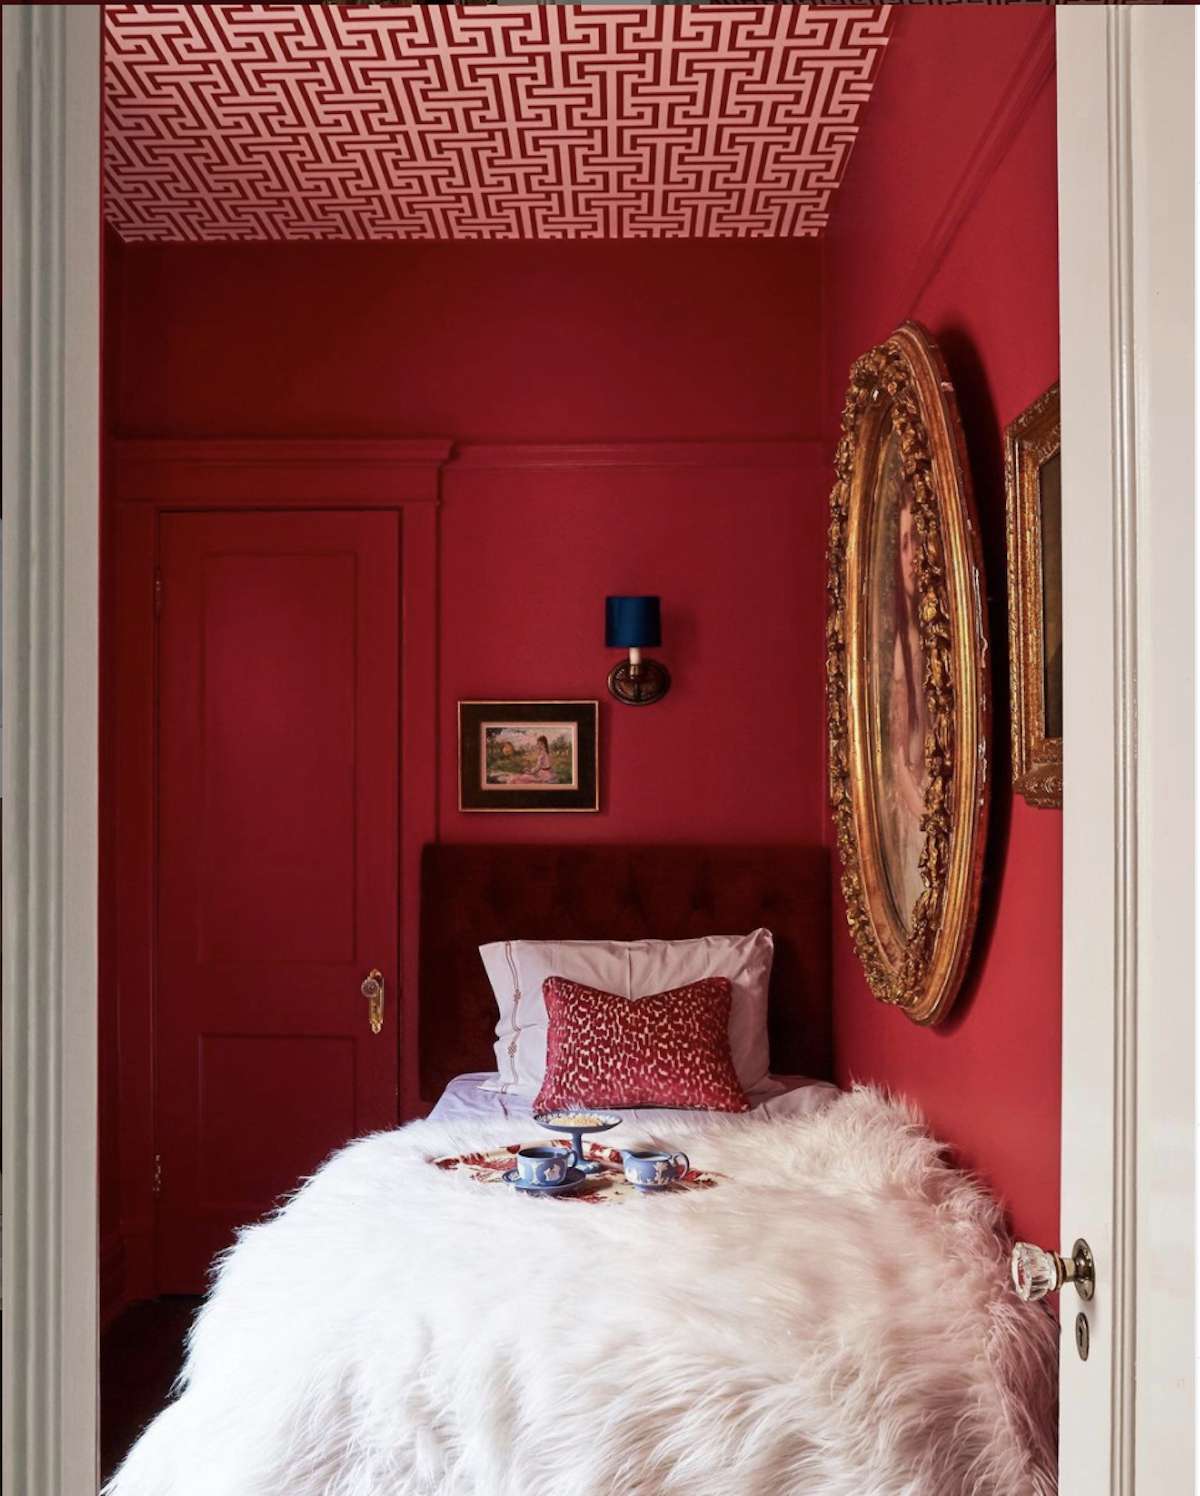 Schlafzimmer mit roten Wänden, rot-weiß gemusterte Decke, weiße flauschige Decke